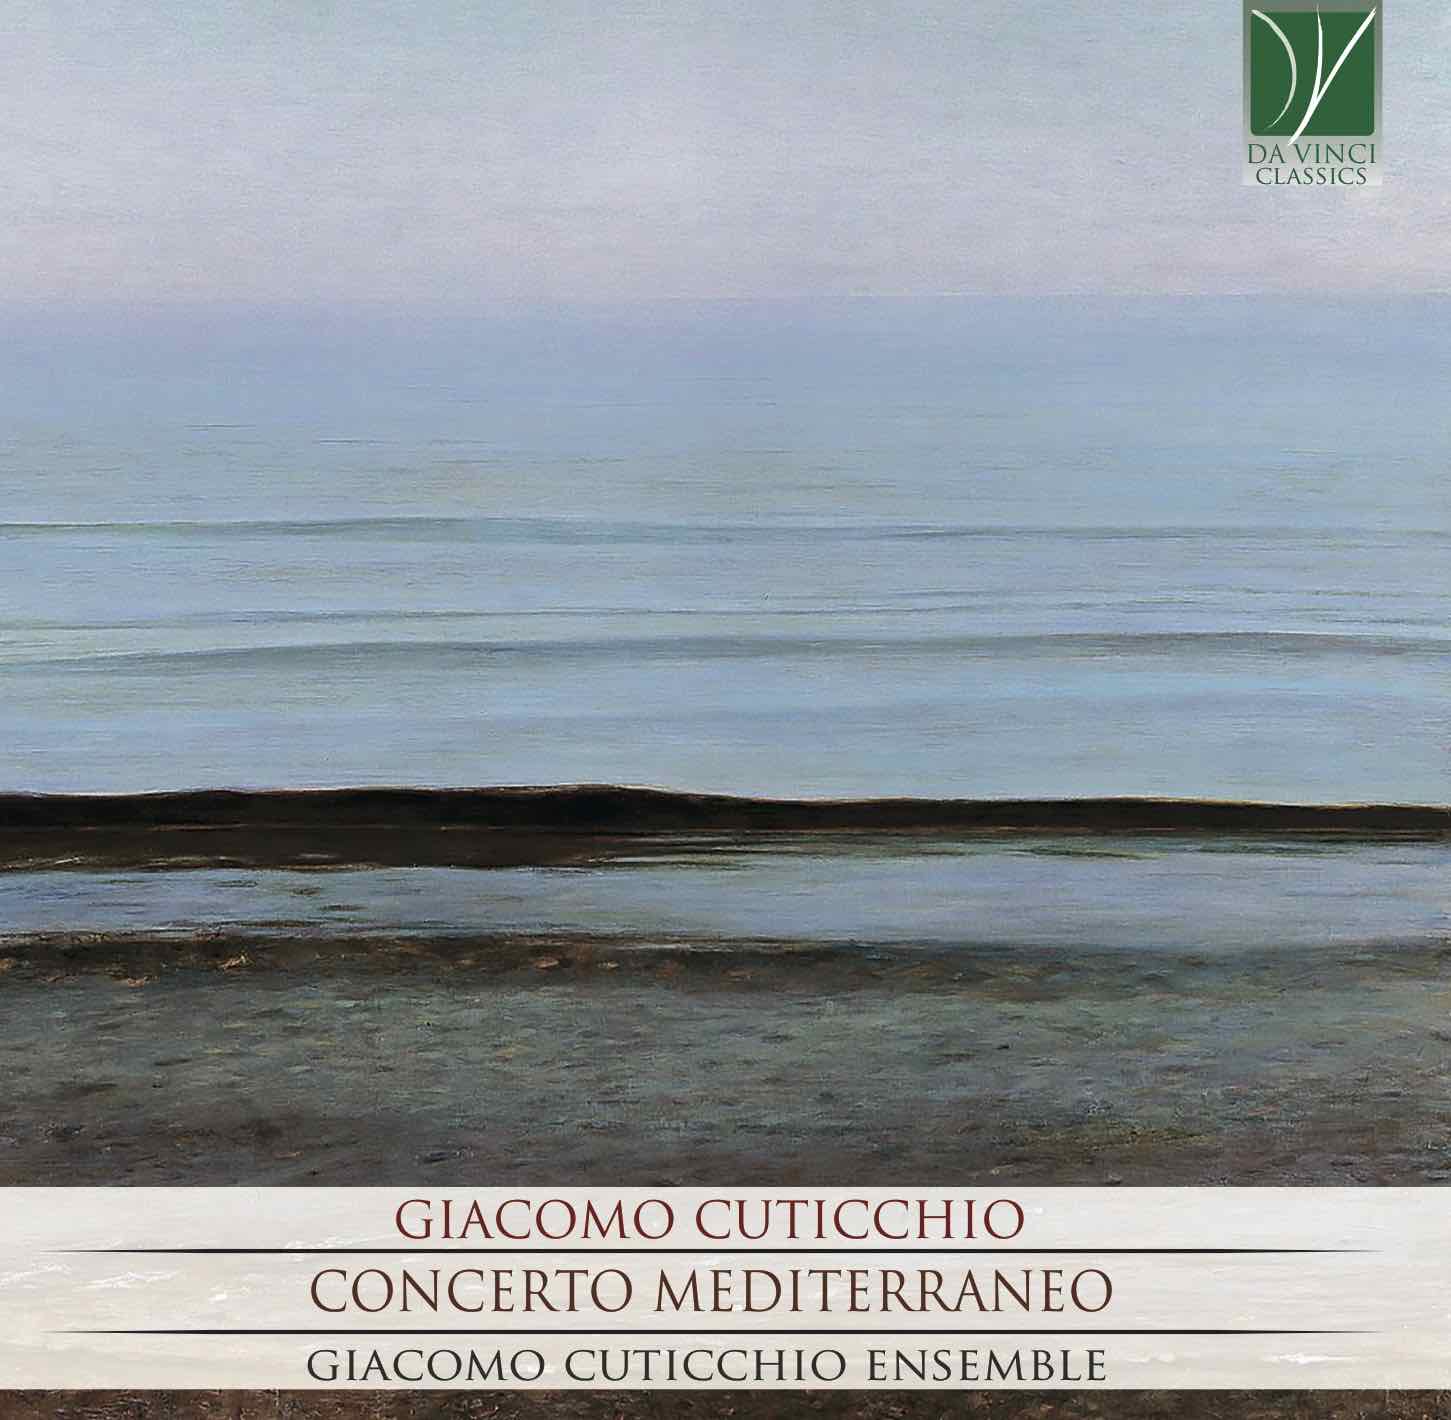 Concerto Mediterraneo by Giacomo Cuticchio Ensemble